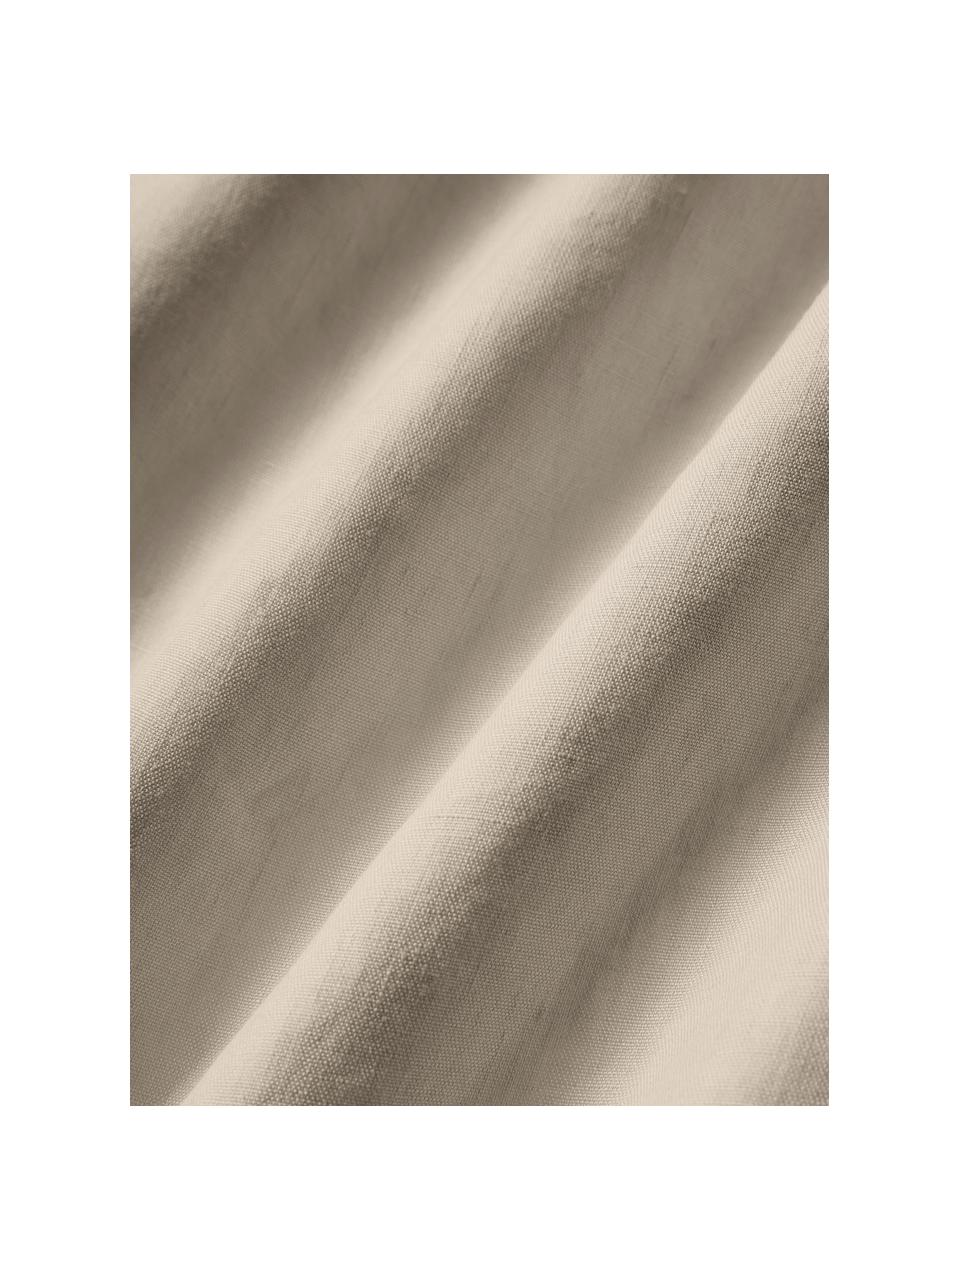 Lenzuola in lino lavato Airy, 100% lino, certificato lino europeo
Numero di fili 165 TC, qualità standard

Il lino è una fibra naturale caratterizzata da traspirabilità, resistenza e morbidezza. Il lino è un materiale rinfrescante e assorbente che assorbe e rilascia rapidamente l'umidità, rendendolo ideale per le temperature calde.

Il materiale utilizzato in questo prodotto è stato testato per le sostanze nocive e certificato secondo lo STANDARD 100 by OEKO-TEX®, 137, CITEVE., Beige, Larg. 240 x Lung. 280 cm